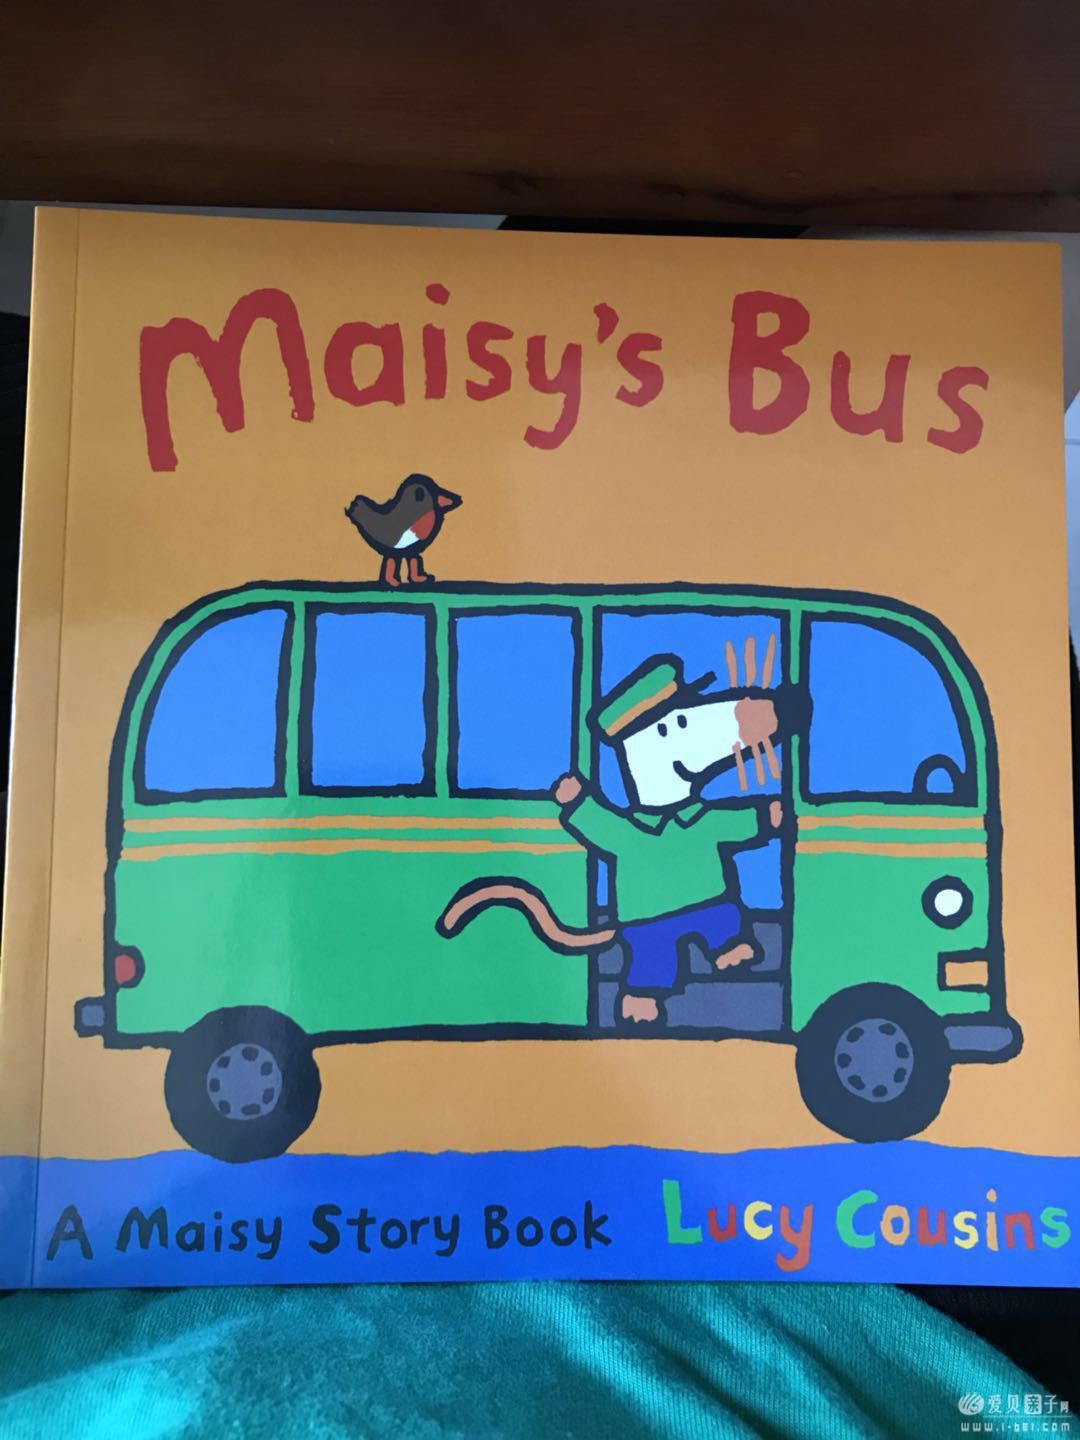 Maisy's bus